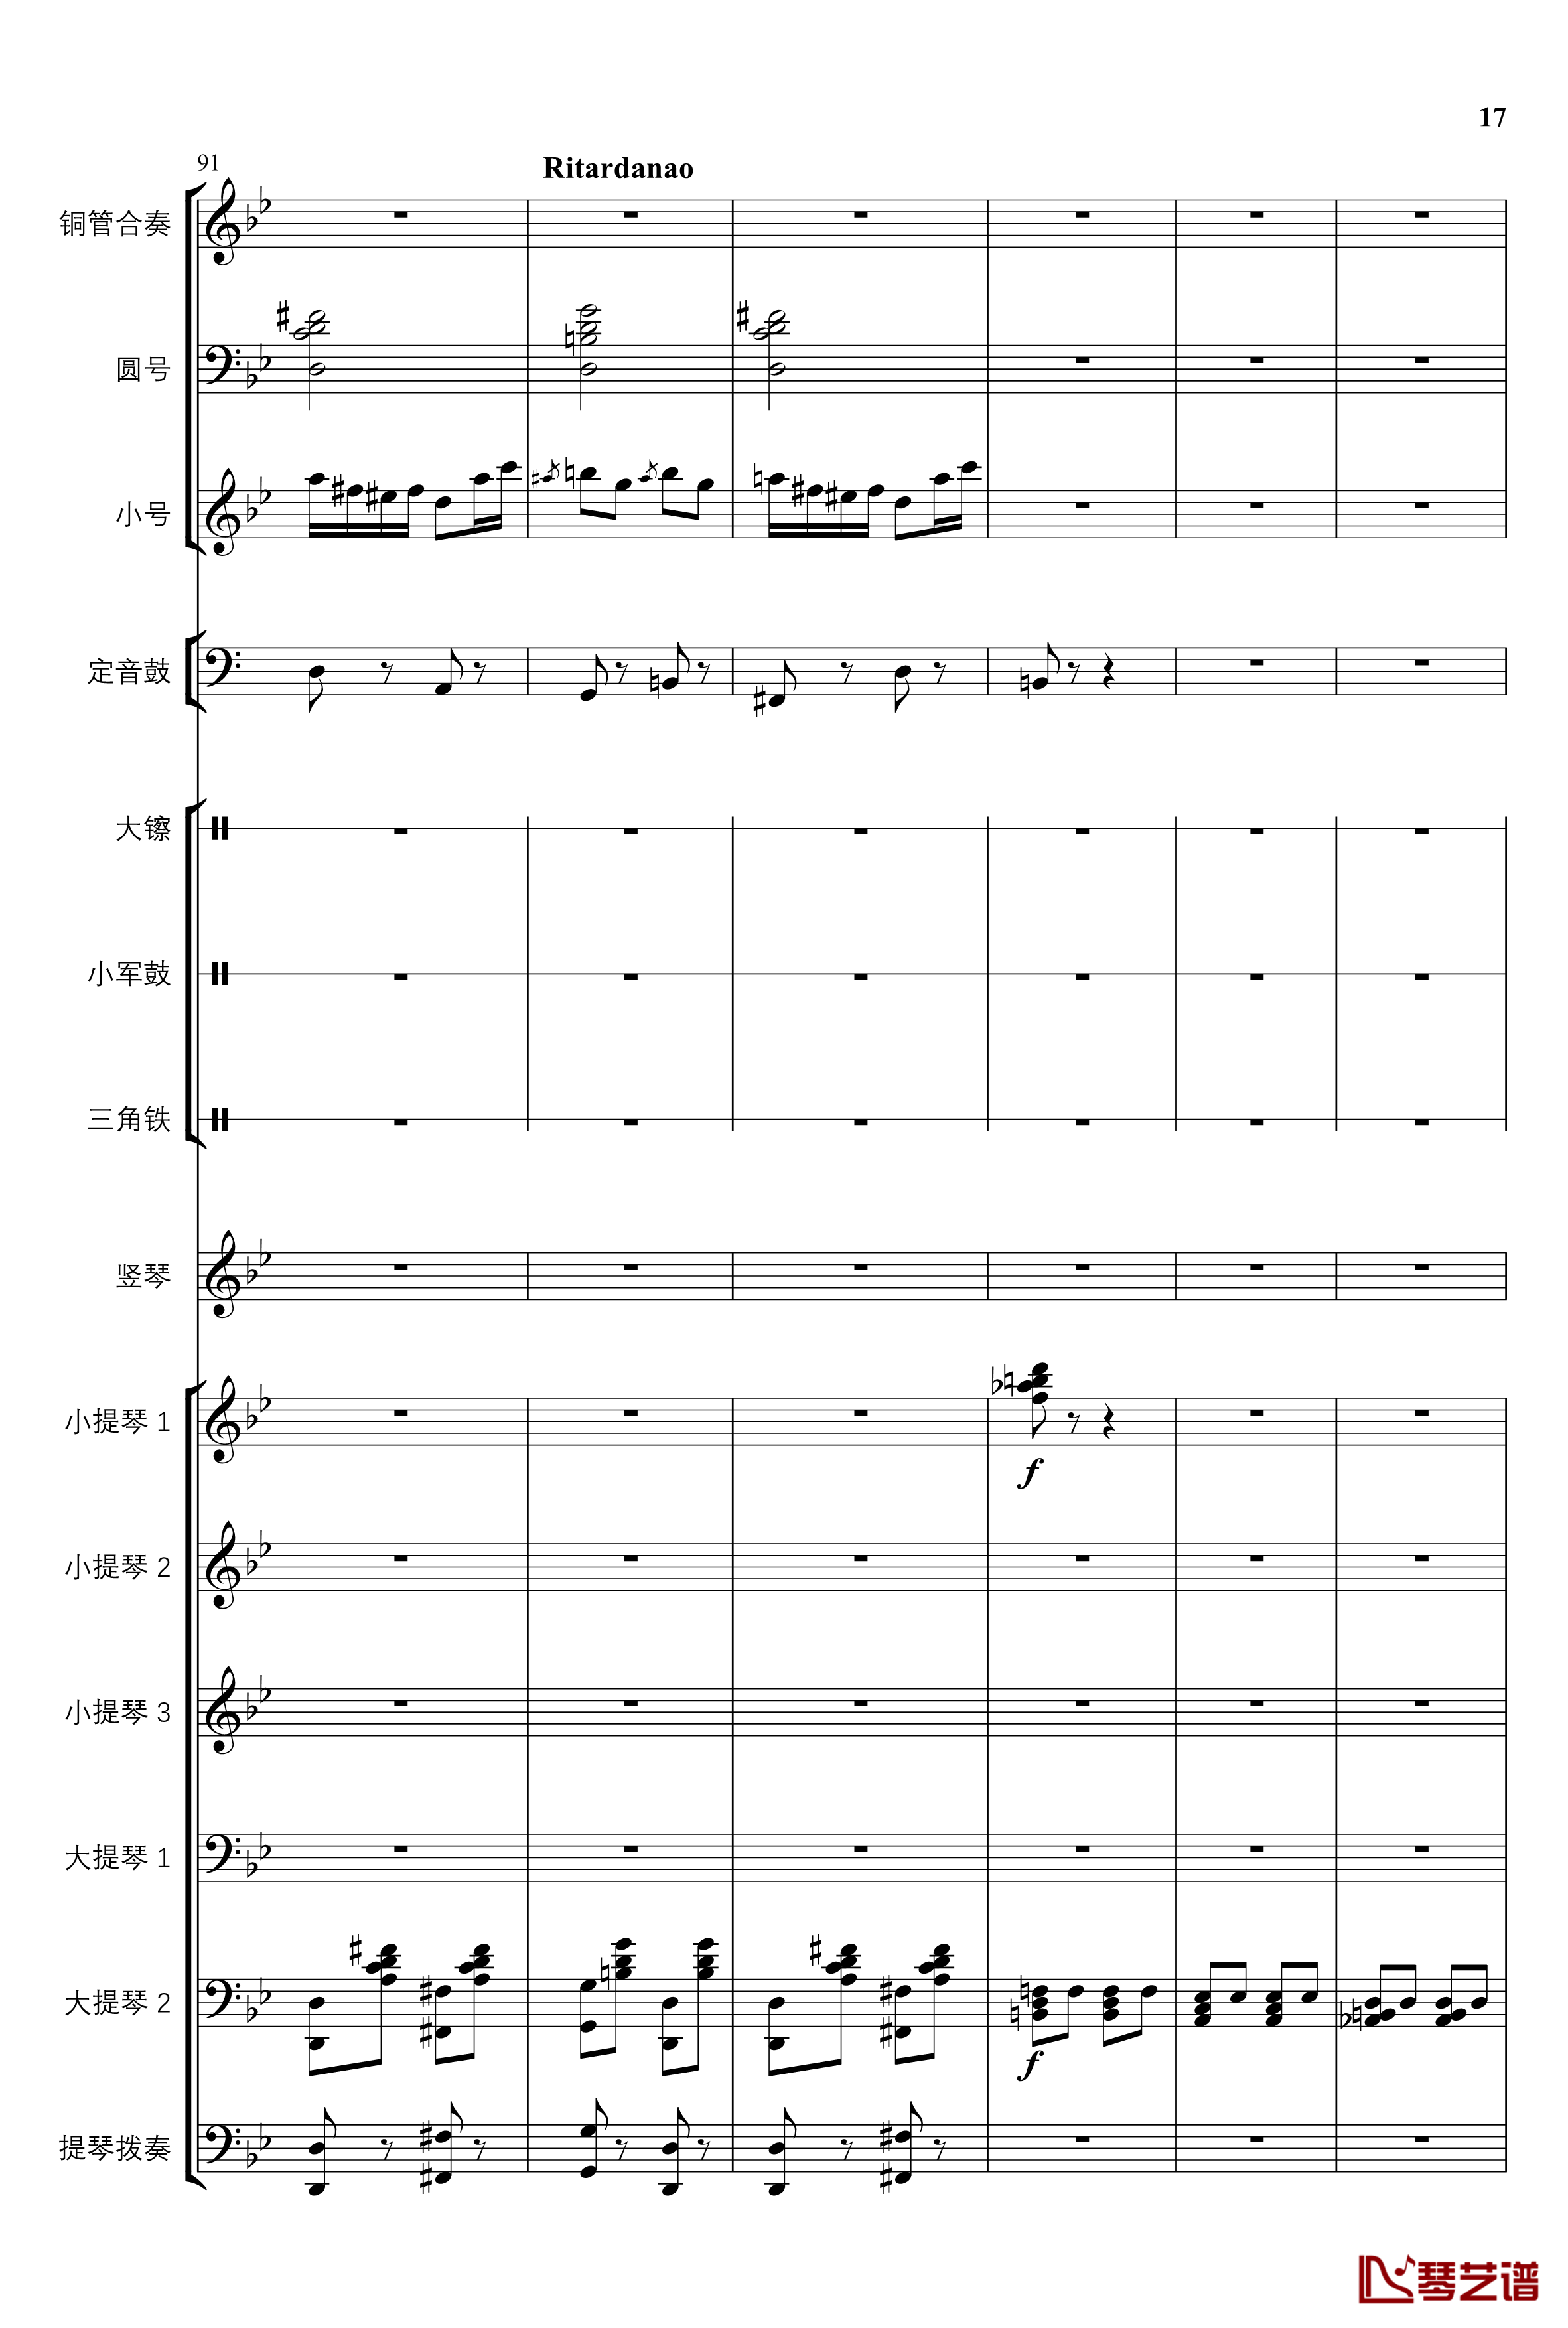 2013考试周的叙事曲钢琴谱-管弦乐重编曲版-江畔新绿